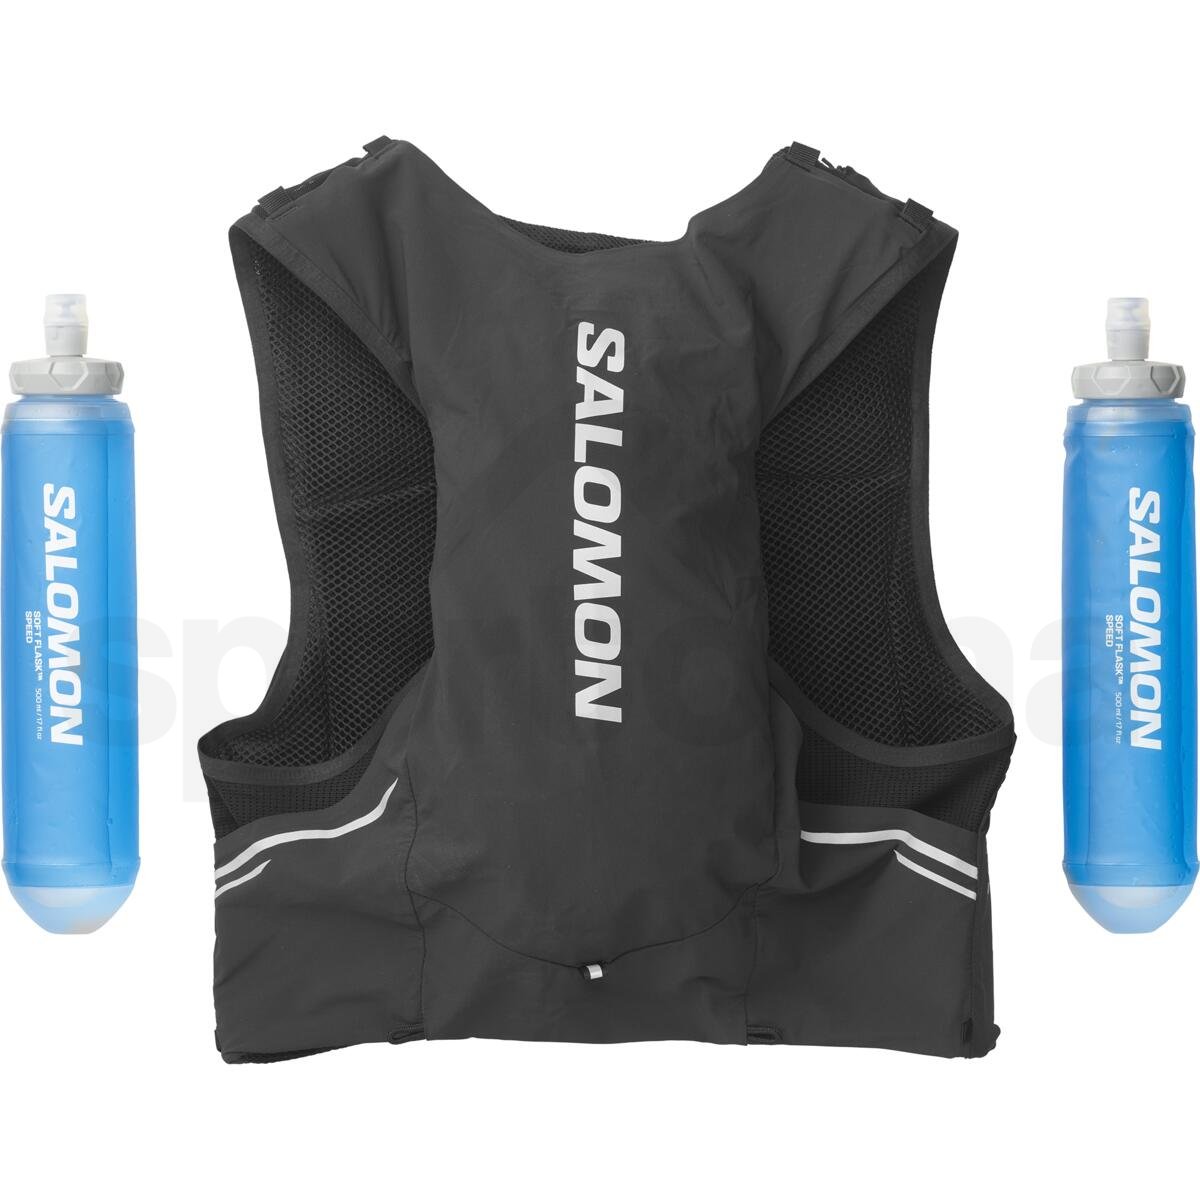 Batoh Salomon Sense Pro 5 with flasks - černá